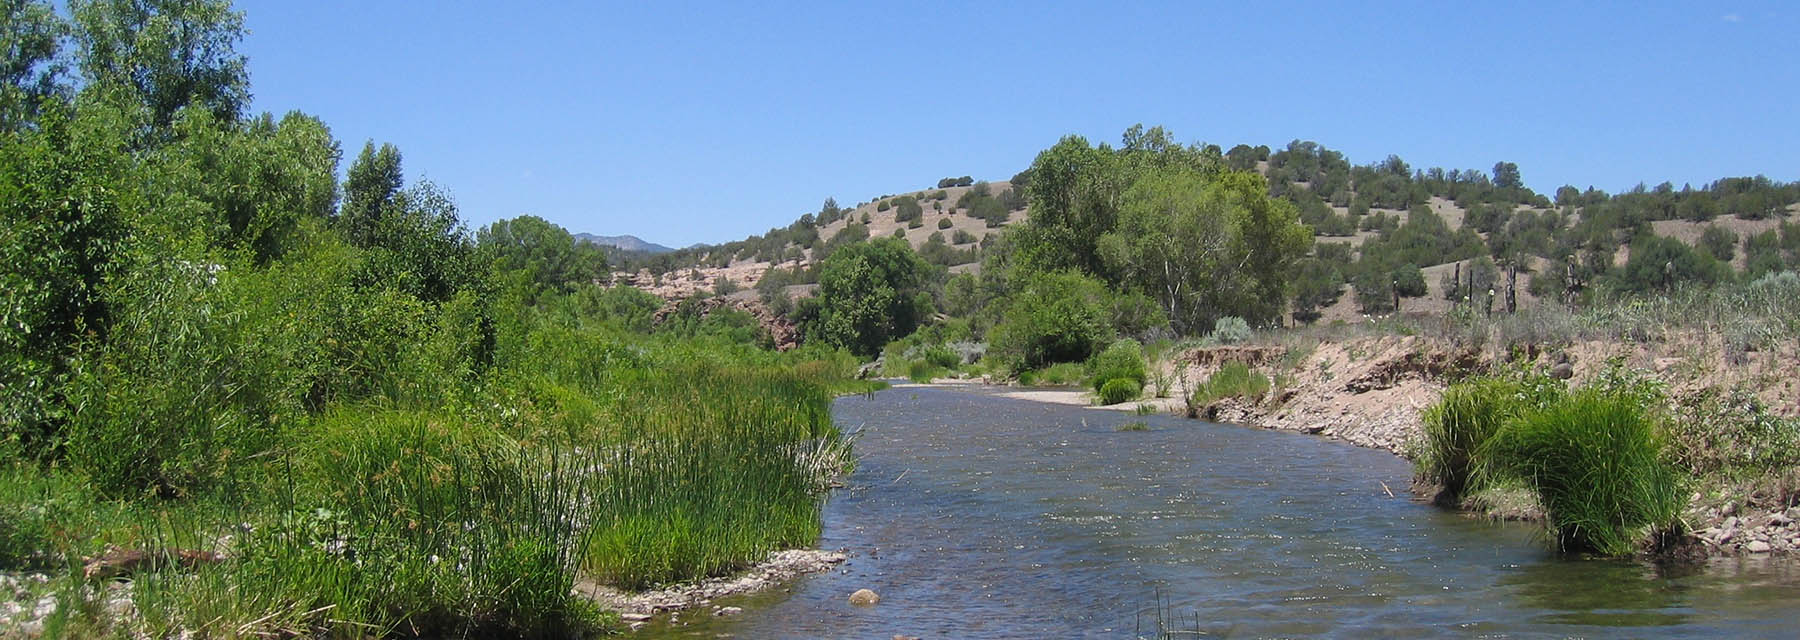 Um rio de água que flui através de uma paisagem ensolarada do Novo México